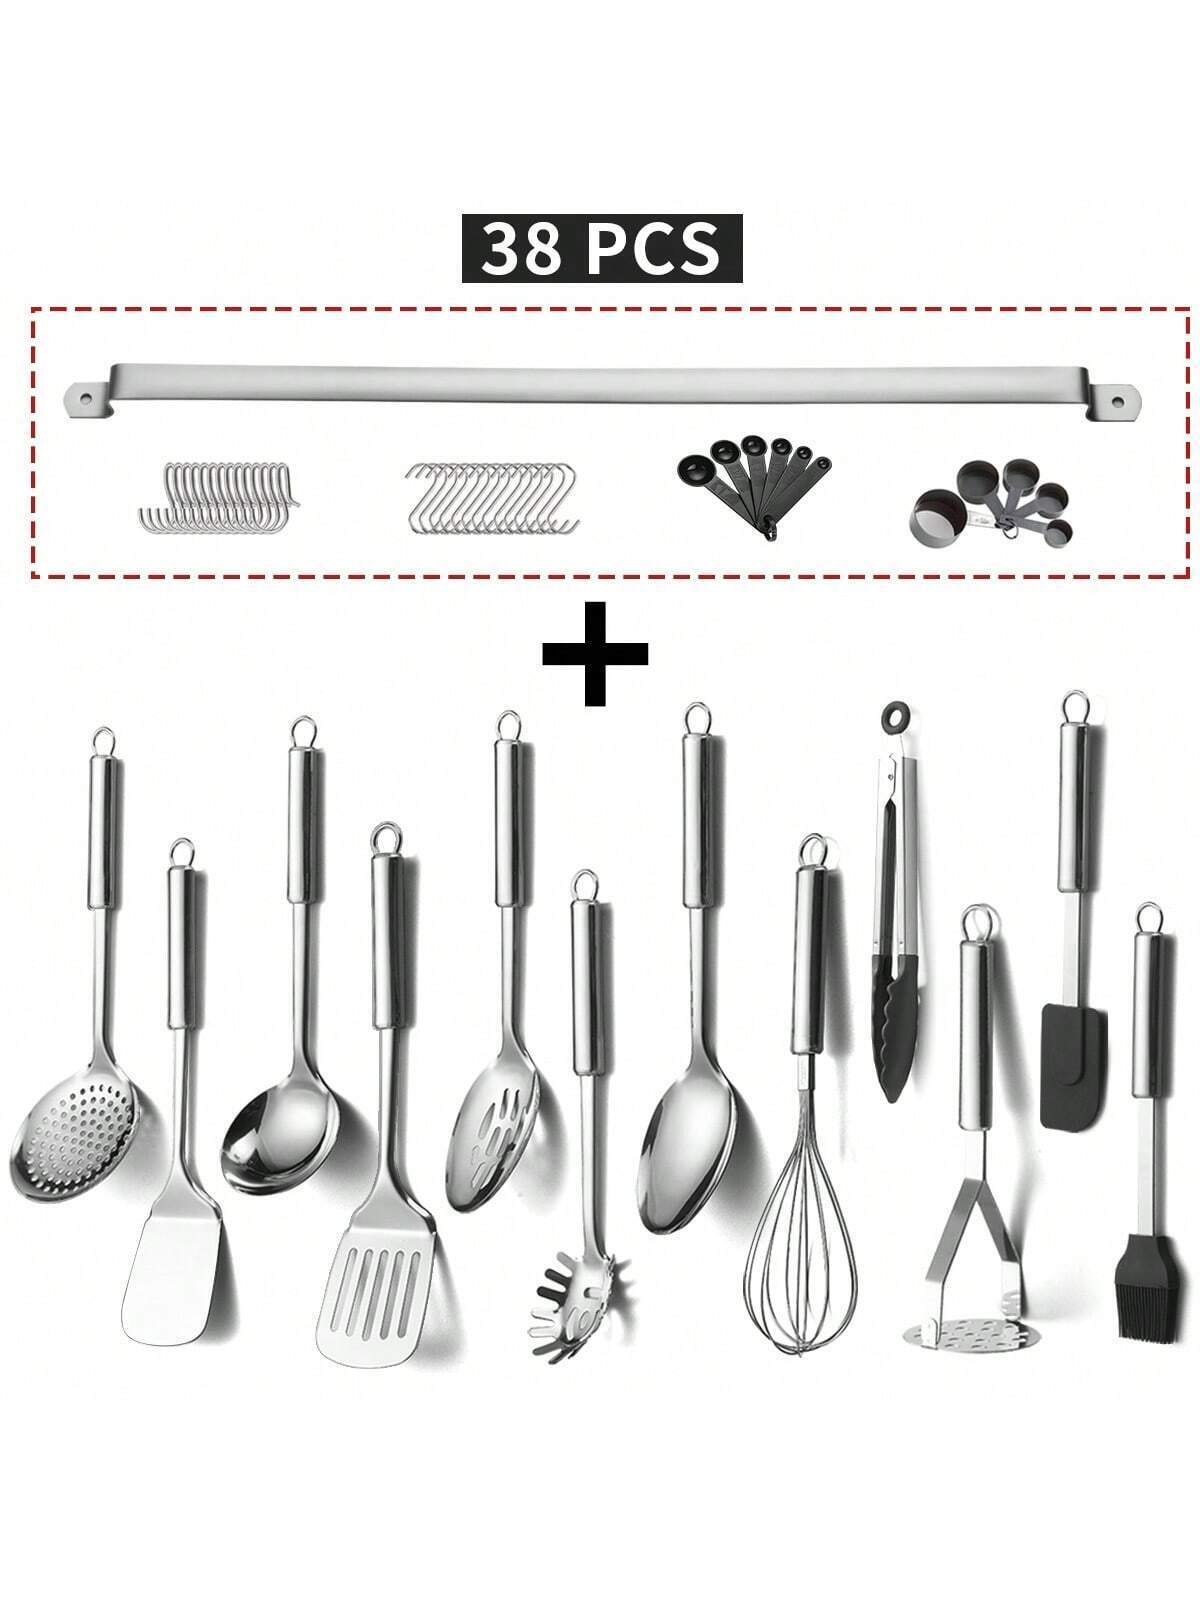 38 Tableware Sets, 38 Cooking Utensils Sets: 1 Spoon, 1 Oil Skimmer, 1 Spoon, 1 